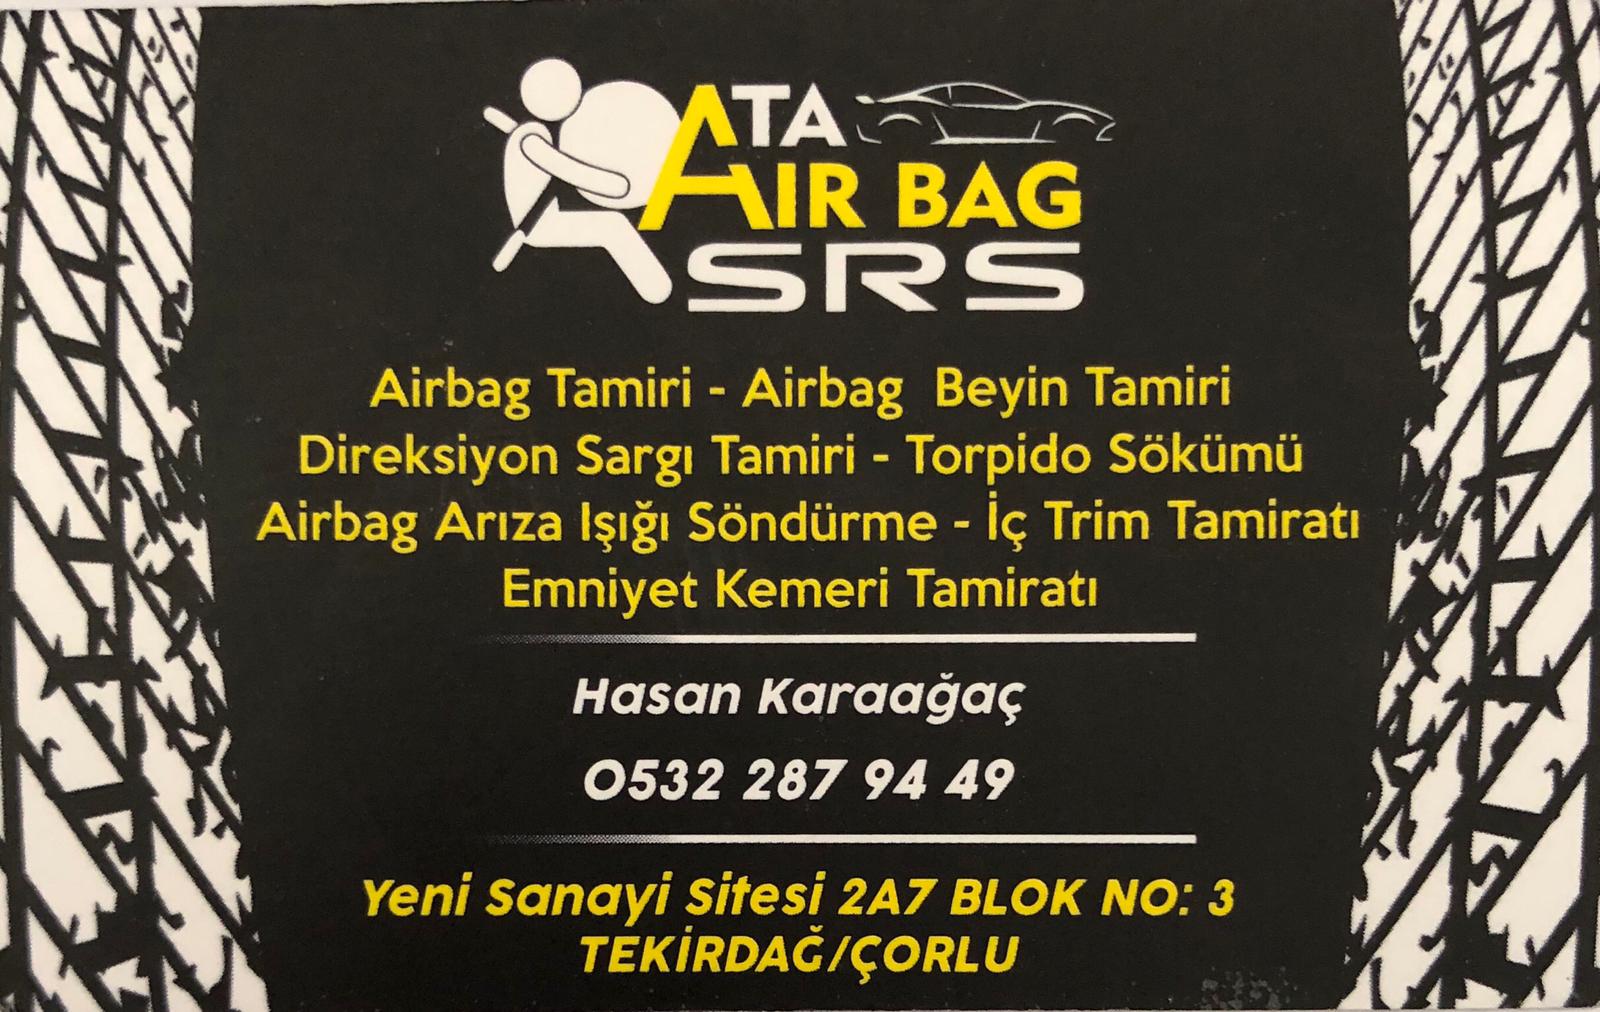 <a href='https://corluyenisanayisitesi.com/firma/get/record/ata-airbag/'>Ata Airbag Srs Sitesine Gitmek için tıklayınız.</a>